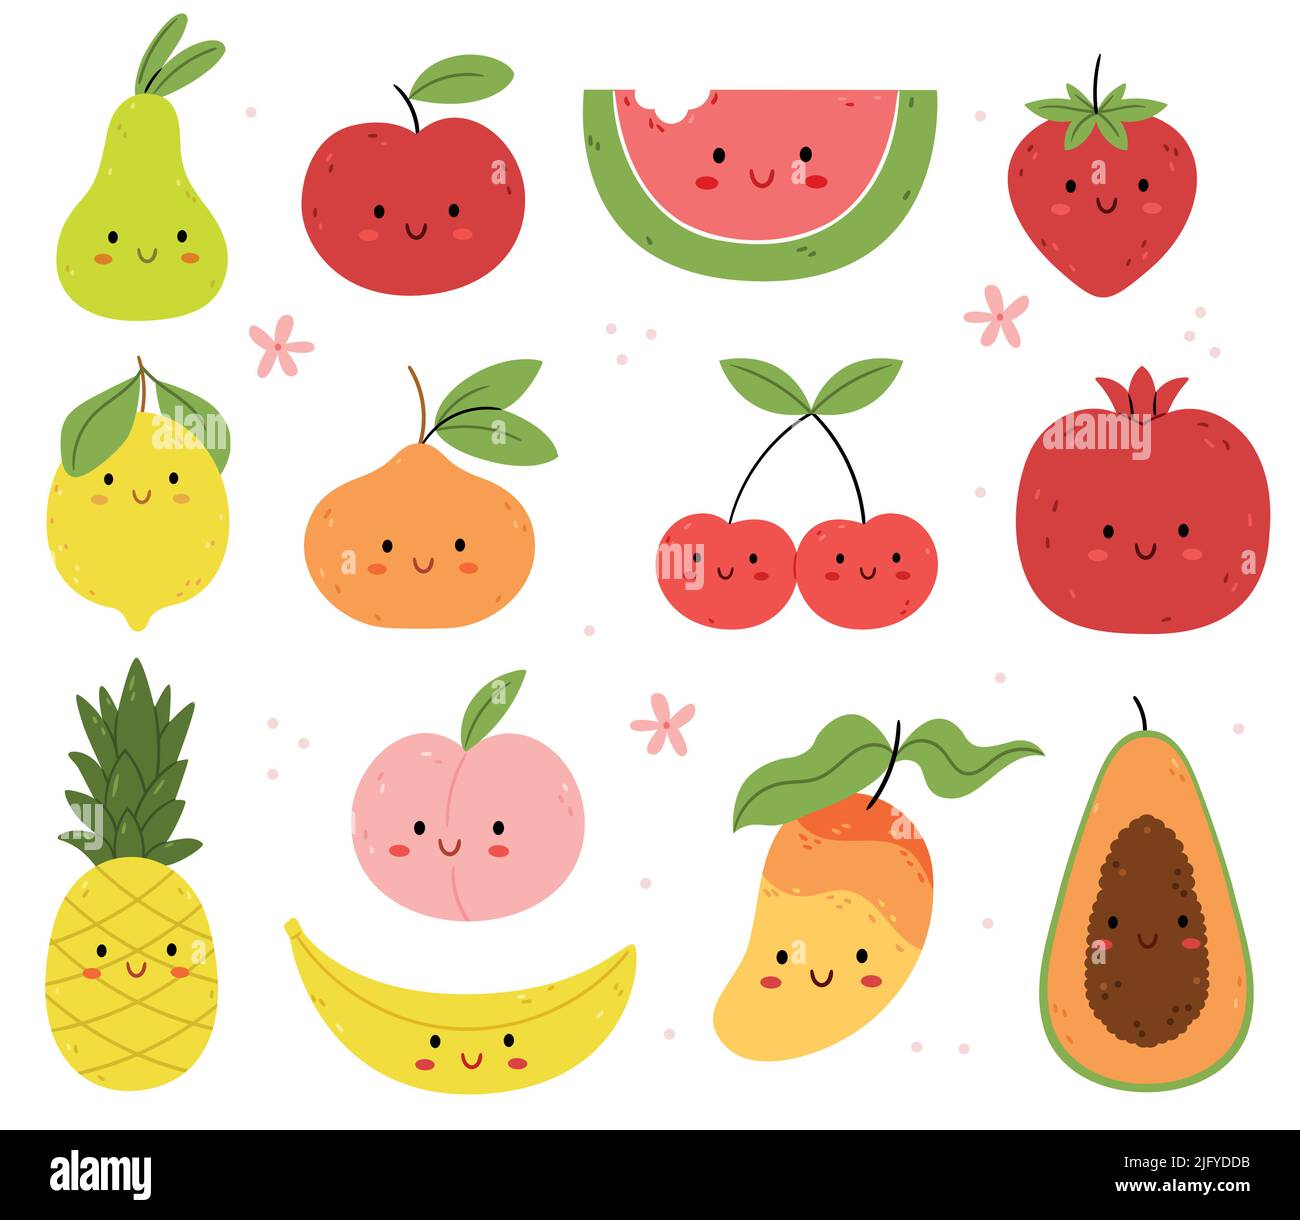 Jeu de caractères de fruits et baies drôles d'été.Illustration pour enfants. Pomme, orange, pastèque, fraise, poire, papaye, banane, citron, ananas Illustration de Vecteur